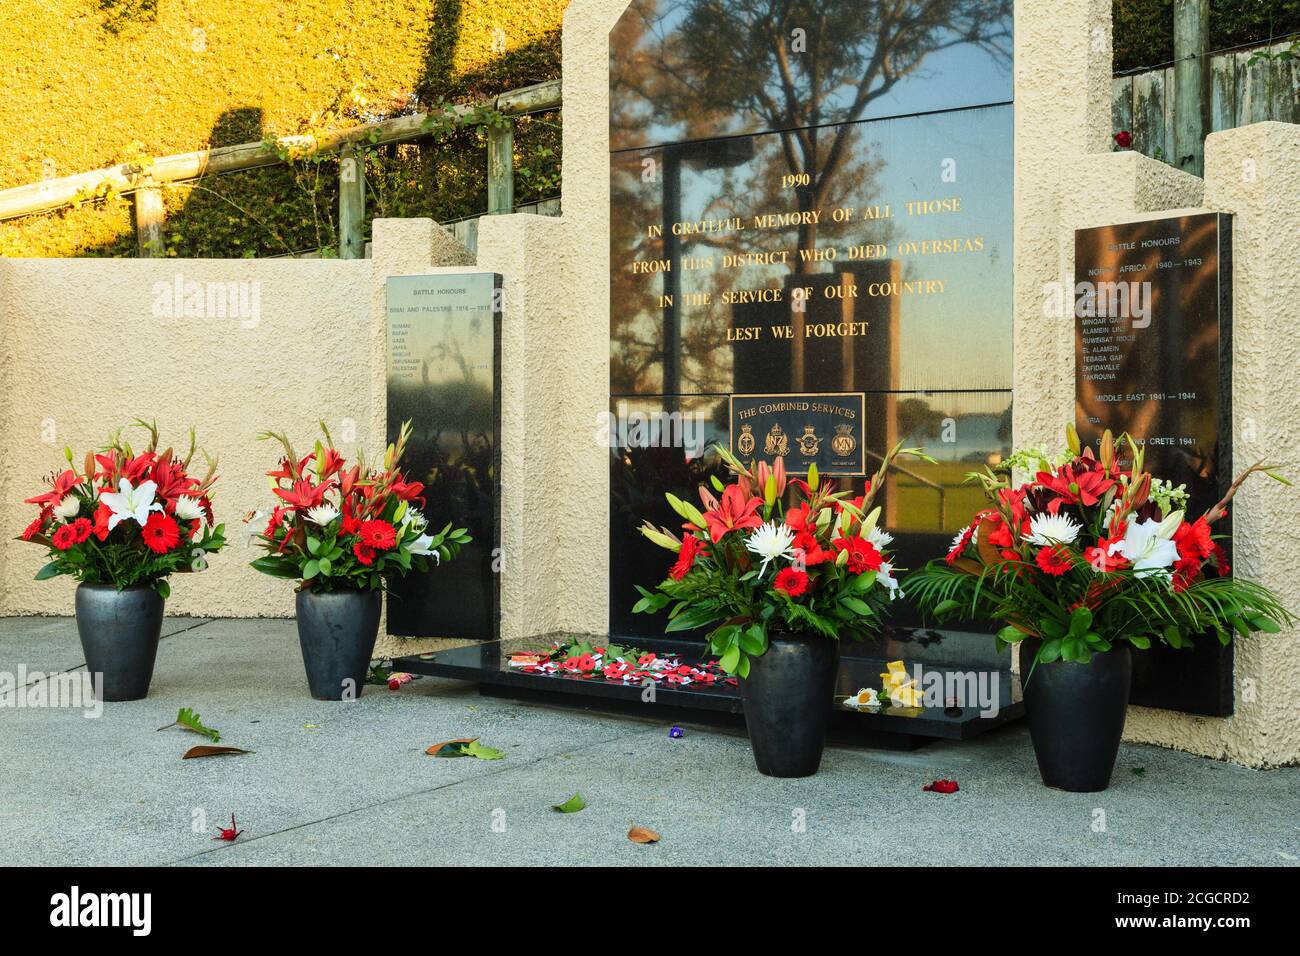 Fleurs disposées autour de la base d'un mémorial de guerre le jour d'Anzac. Memorial Park, Tauranga, Nouvelle-Zélande, avril 25 2018 Banque D'Images